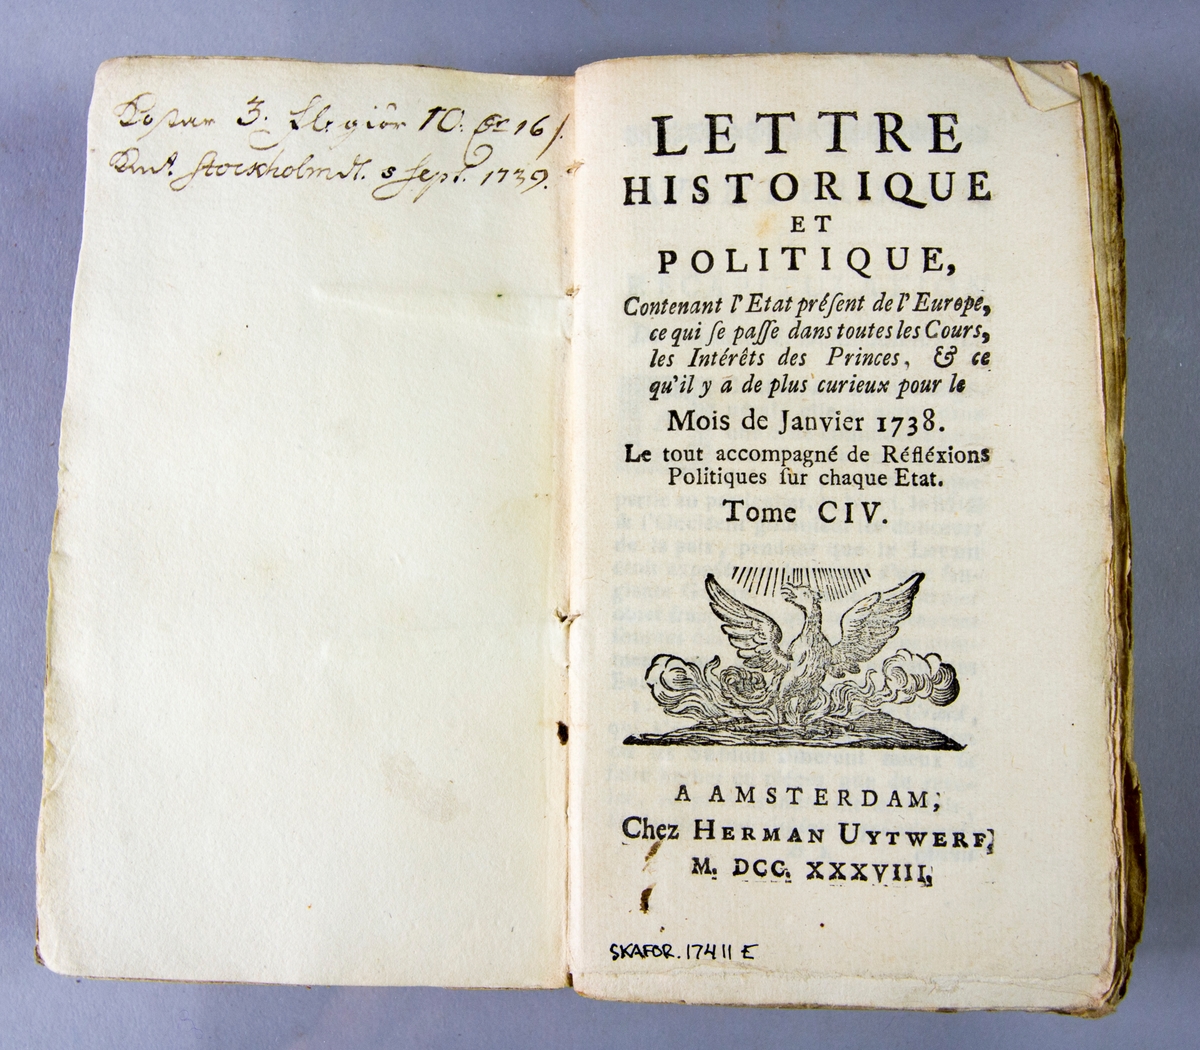 Bok, häftad, "Lettre historique et politique",  del 104, tryckt 1738 i Amsterdam. Pärmar av marmorerat papper, blekt rygg med påklistrade etiketter med titel och samlingsnummer. Oskuret snitt. Anteckning om inköp på pärmens insida.